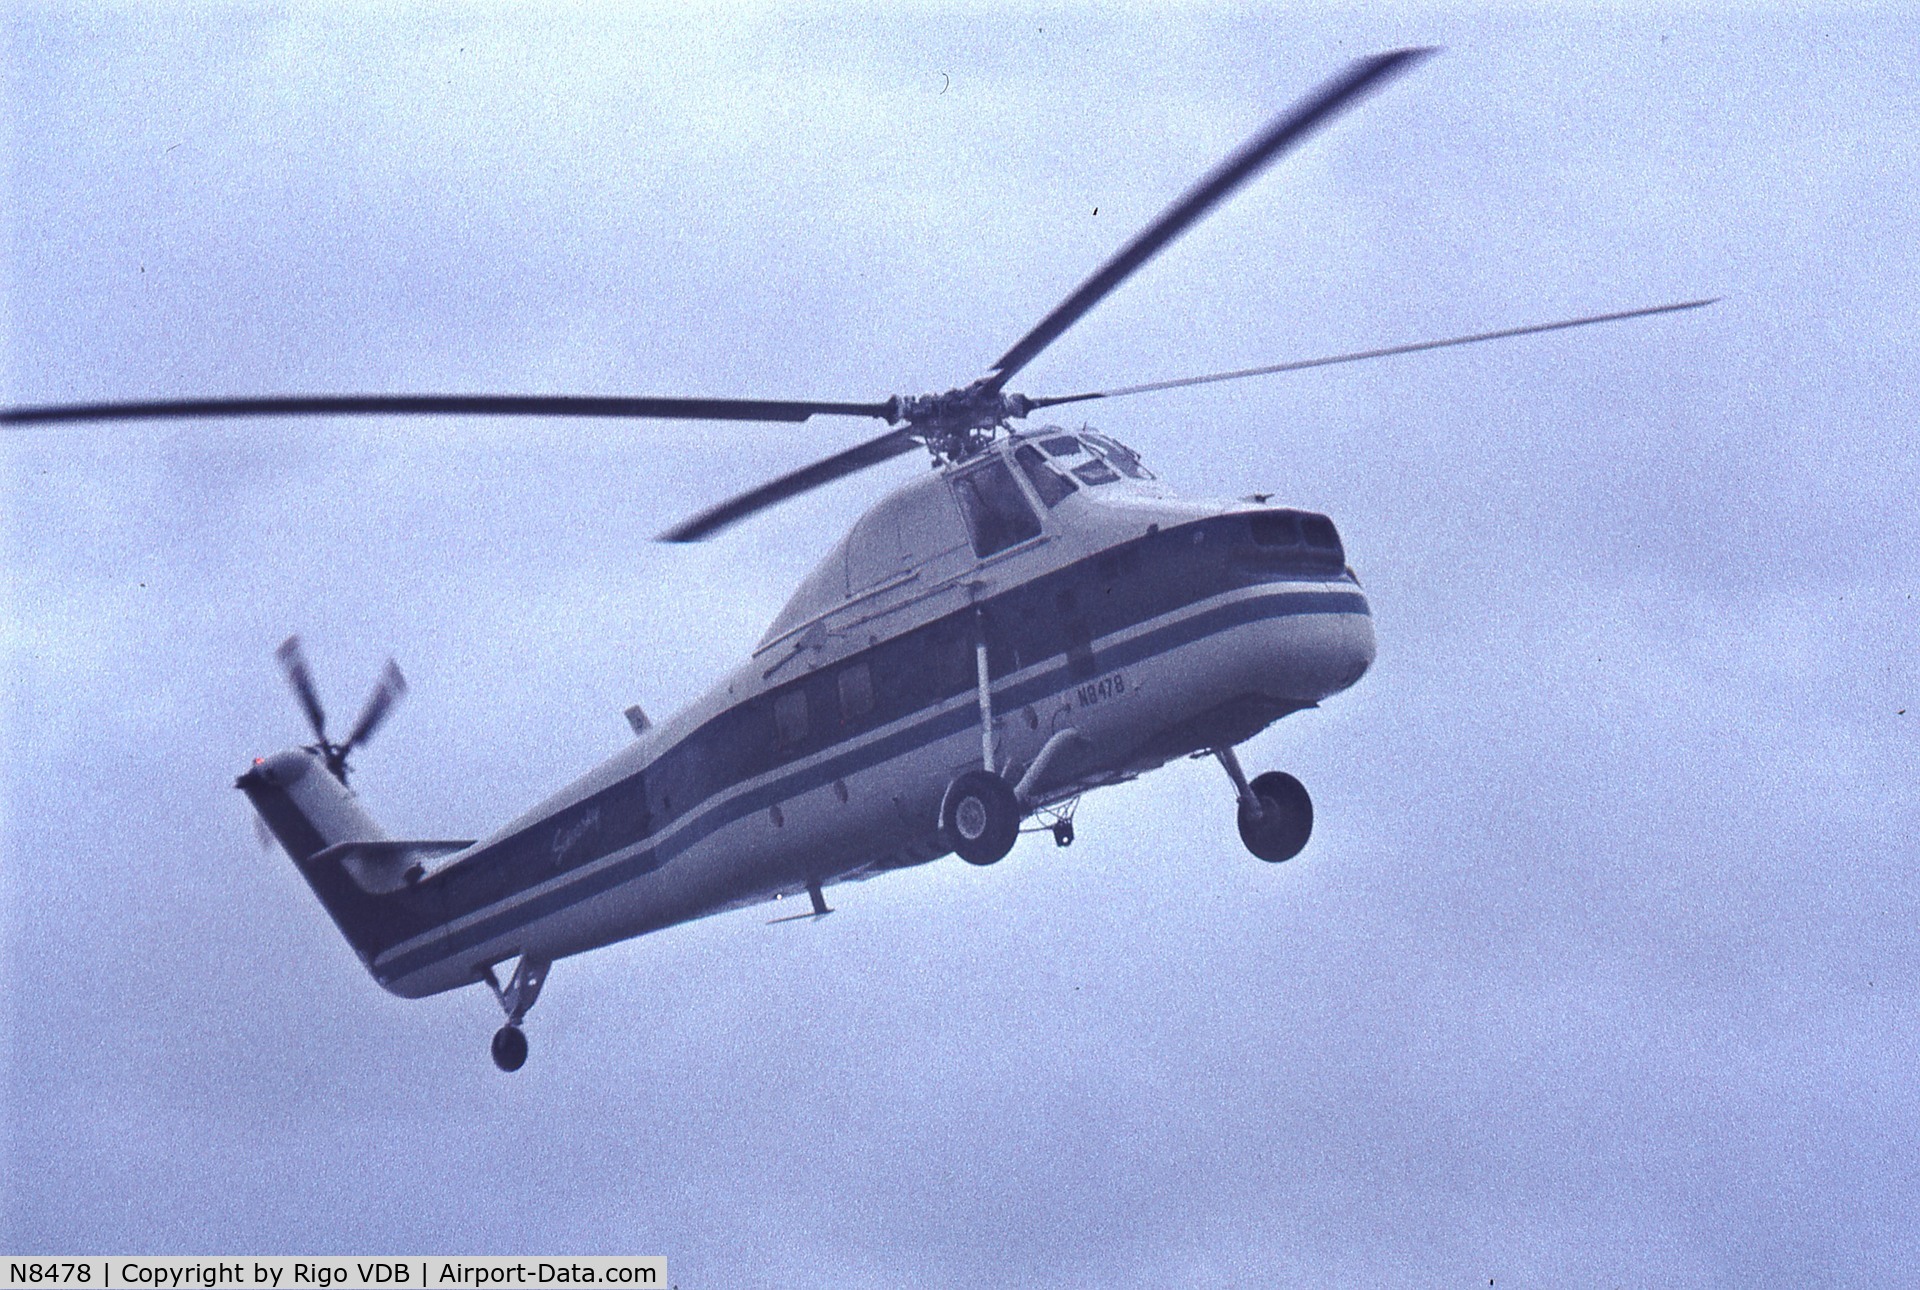 N8478, Sikorsky S-58T C/N 58-775, Farnborough; early Seventies.